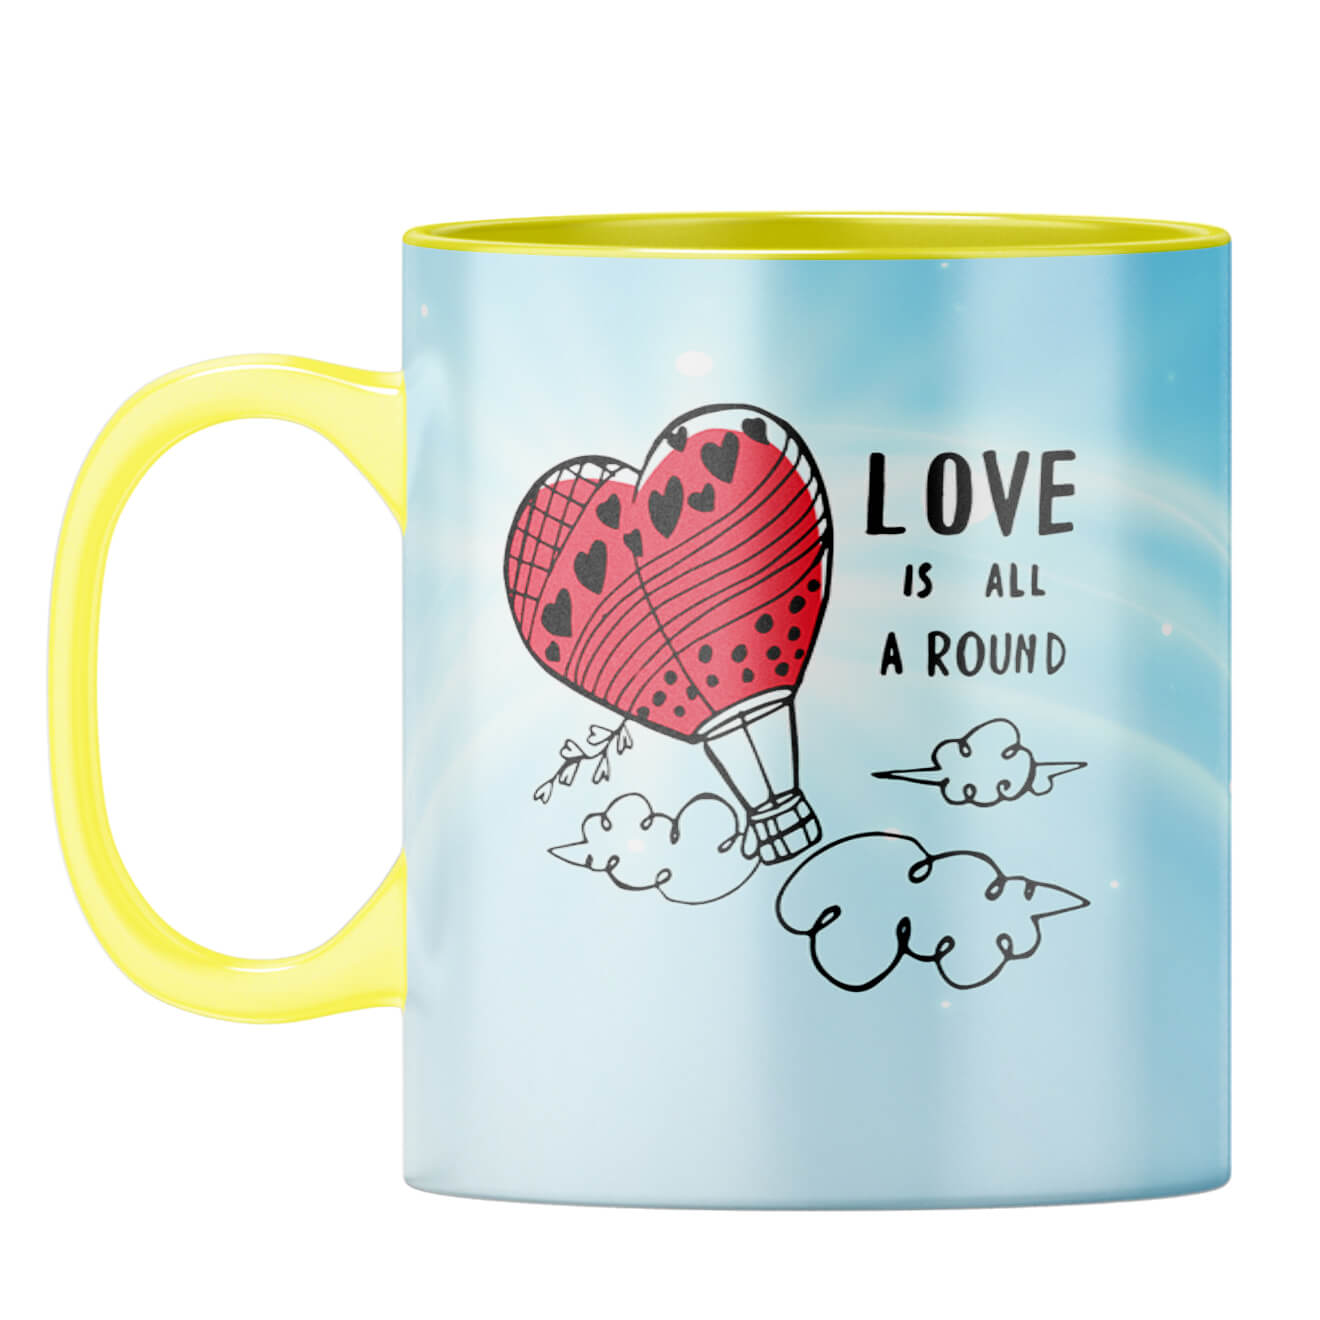 Love is all around Coffee Mug Yellow